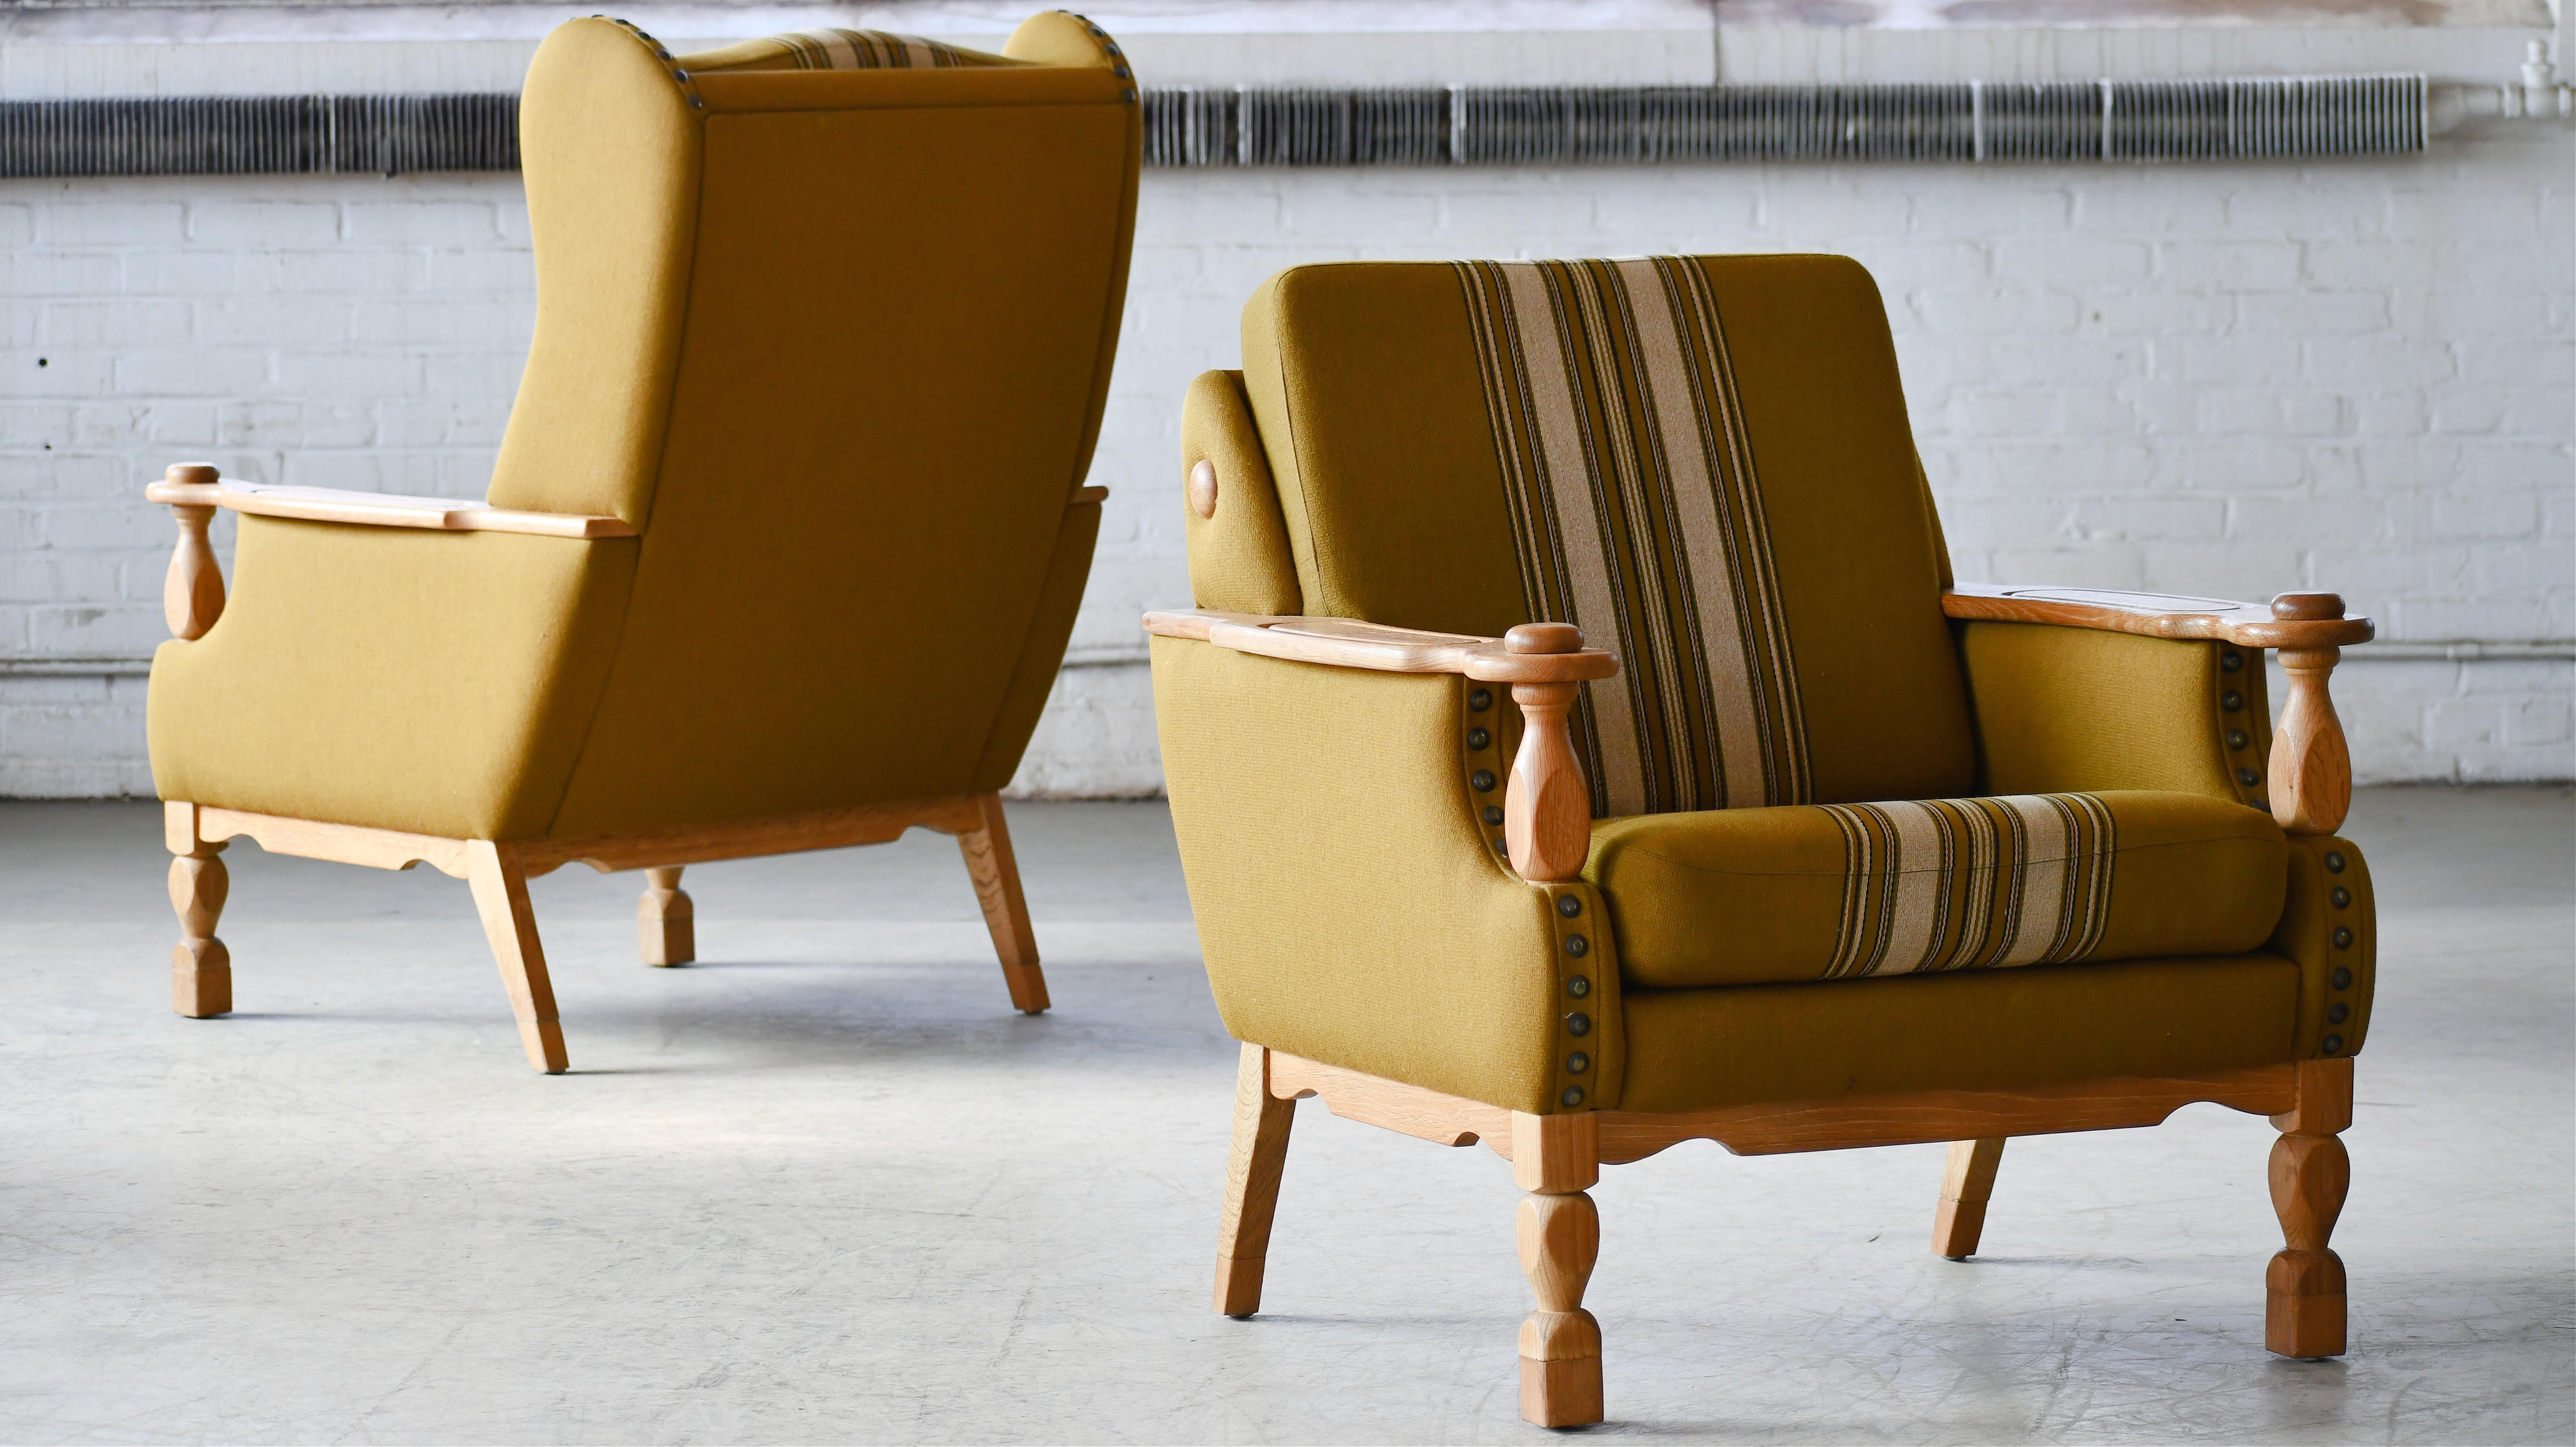 Seltenes und begehrtes Paar Lounge-Sessel des dänischen Designers Henning Kjaernulf, hergestellt aus quartalsweise gesägter Weißeiche und handgeschnitzt im brutalistischen Stil, inspiriert von Kunst und Kunsthandwerk und sogar vom jakobinischen